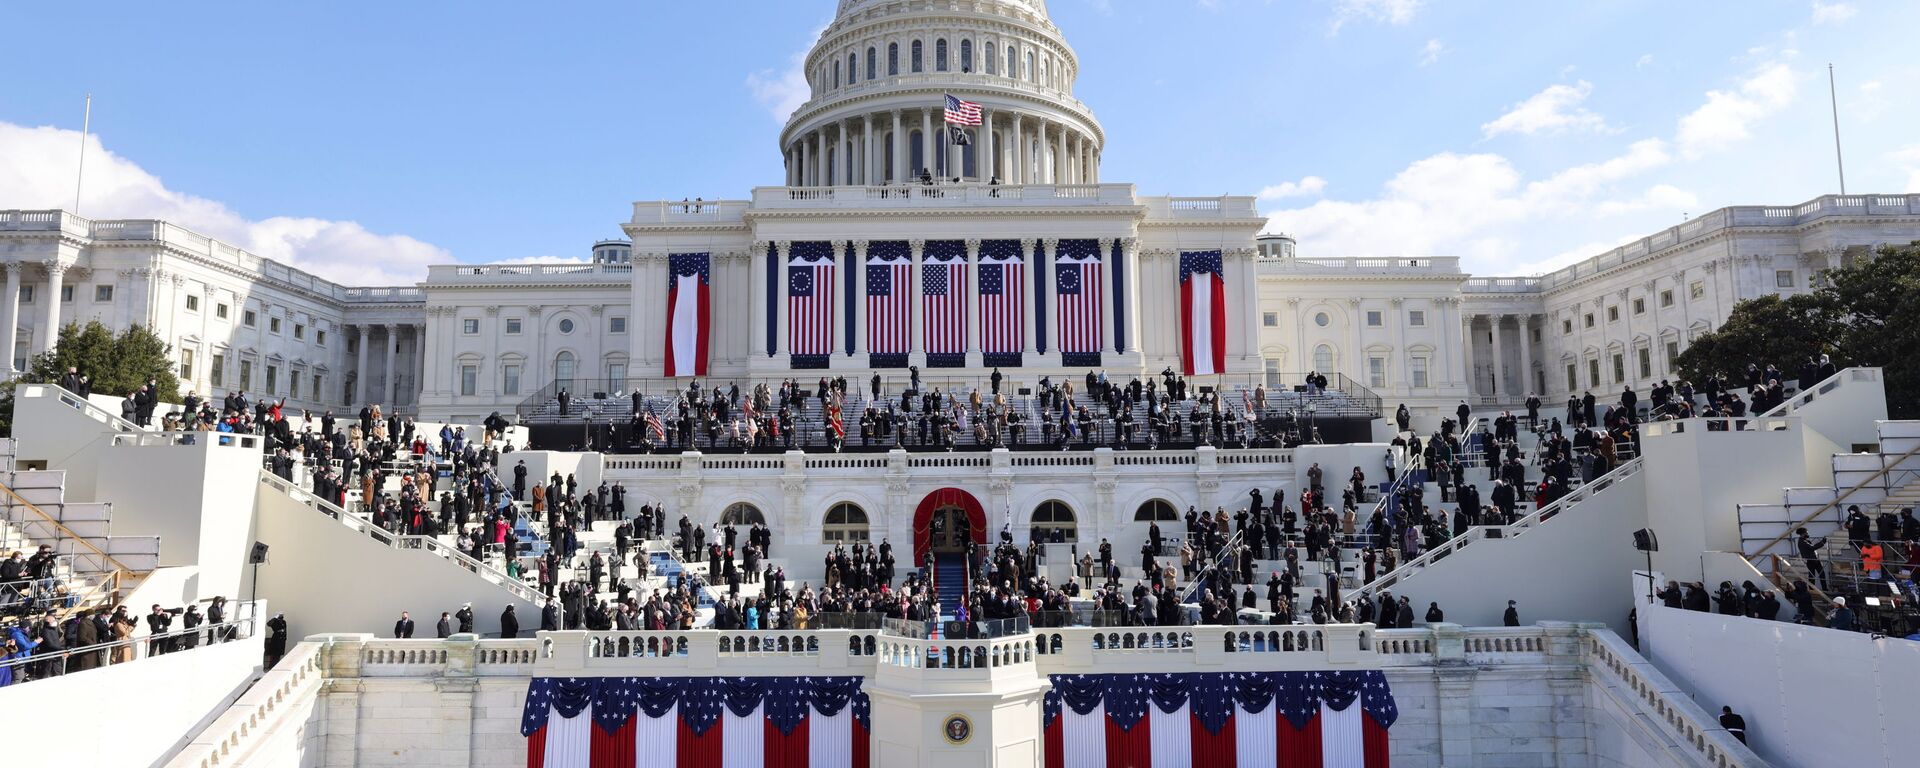 مراسم تنصيب جو بايدن رئيسا للولايات المتحدة، و كامالا هاريس نائبة للرئيس، الكابيتول، الكونغرس واشنطن، 20 يناير 2021 - سبوتنيك عربي, 1920, 27.07.2021